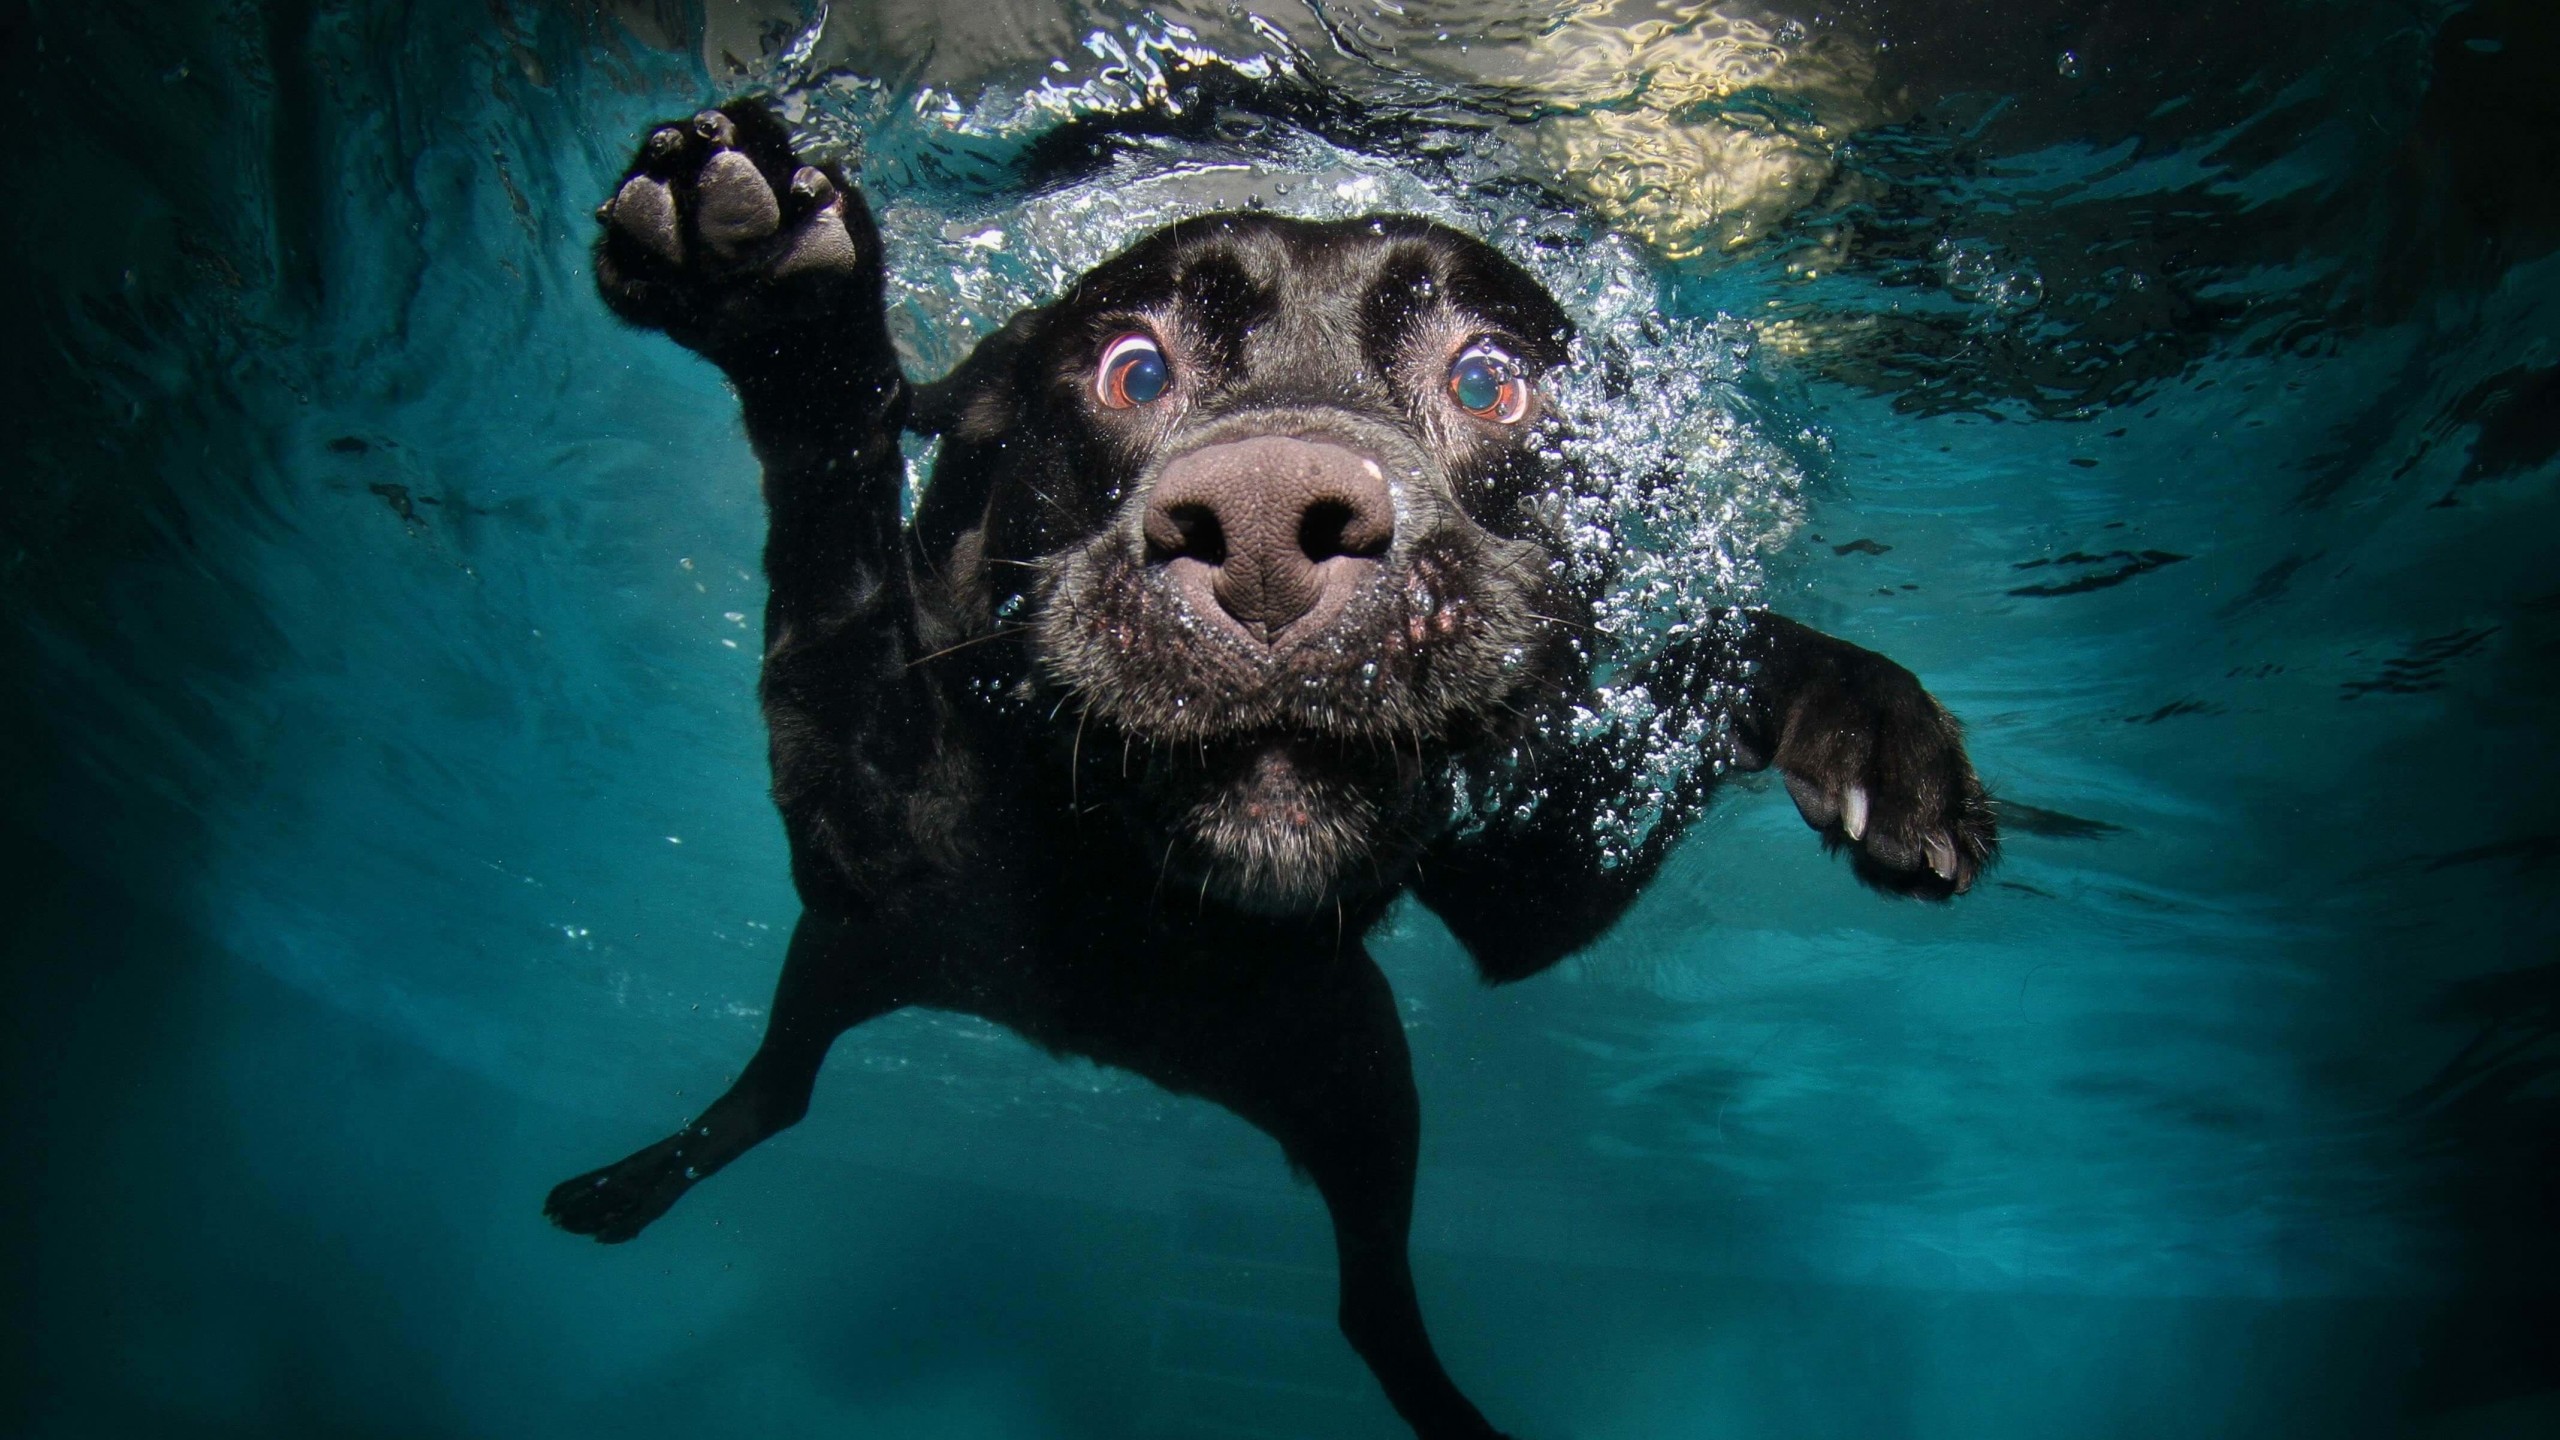 Underwater Dog Wallpaper for Desktop 2560x1440